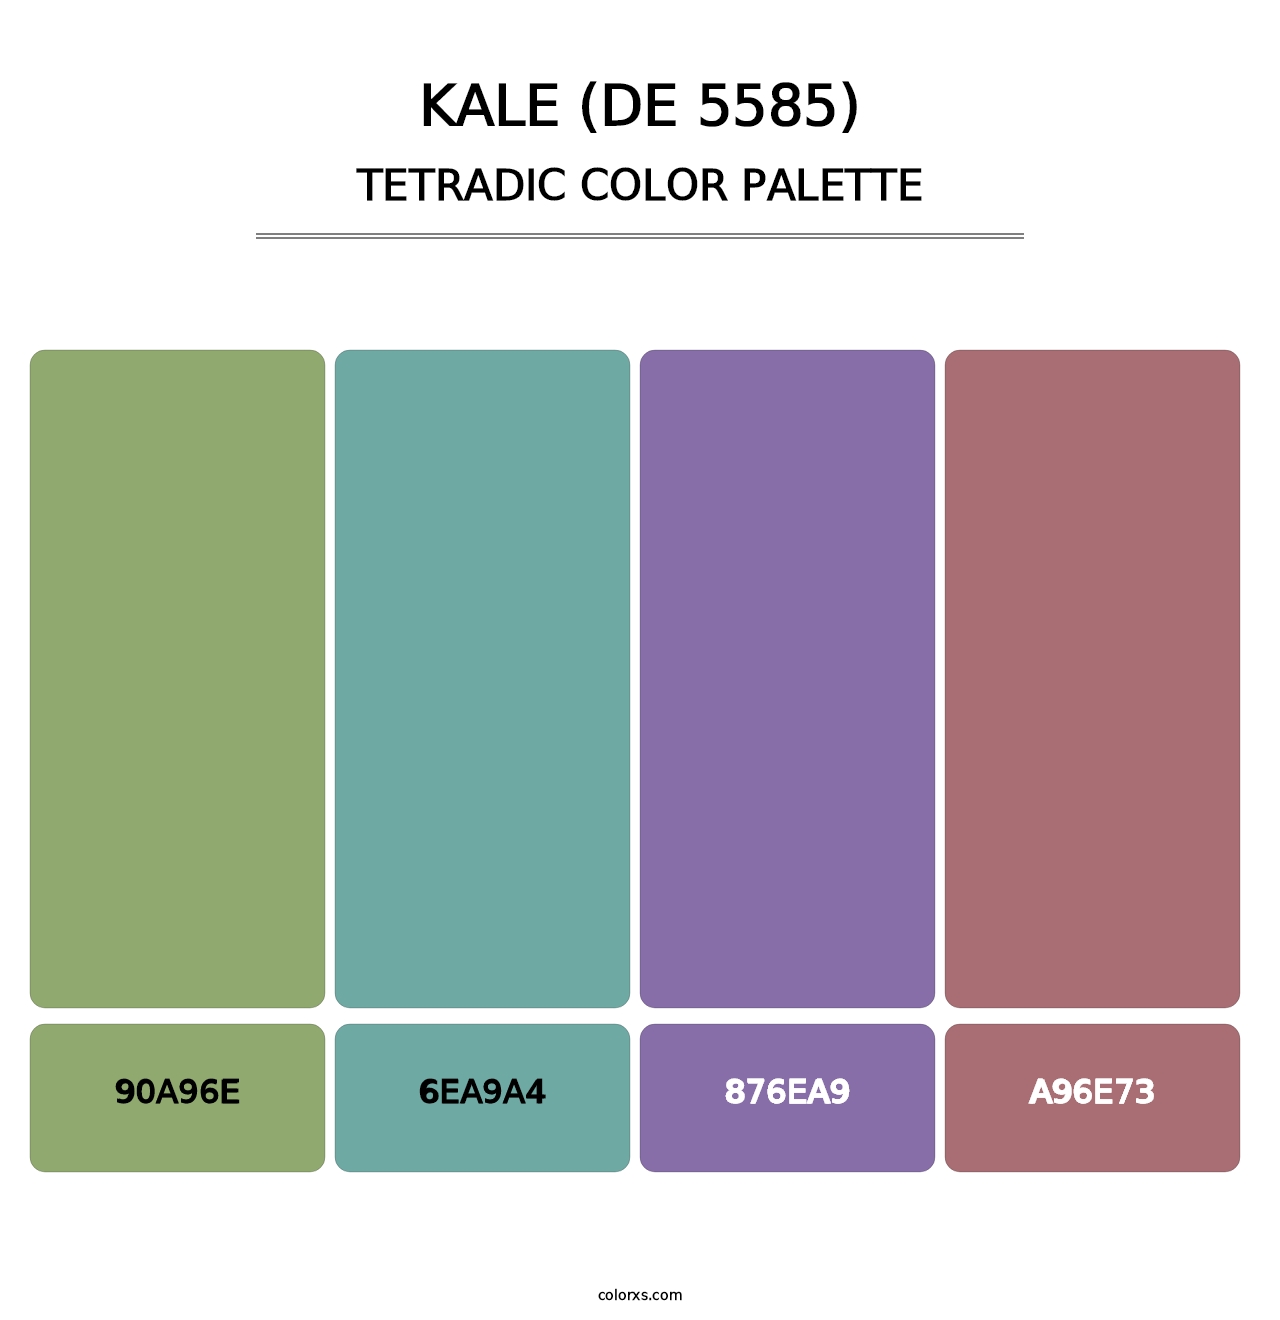 Kale (DE 5585) - Tetradic Color Palette